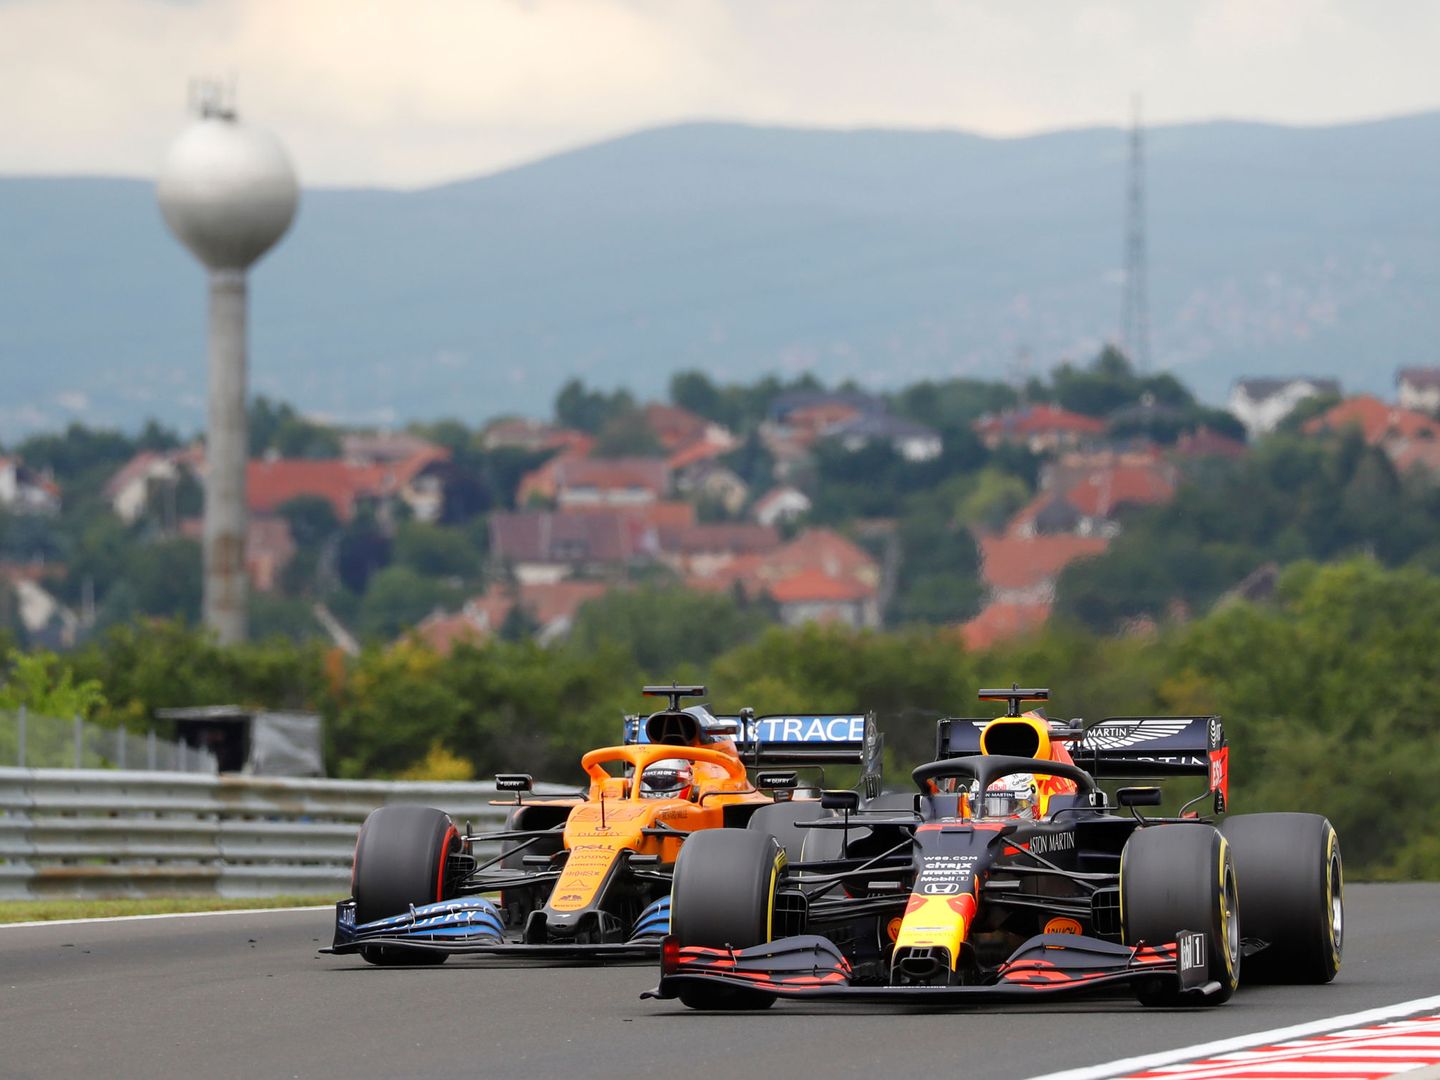 El piloto español teme quedar expuesto ante la degradación en la primera parte de la carrera. (Reuters)